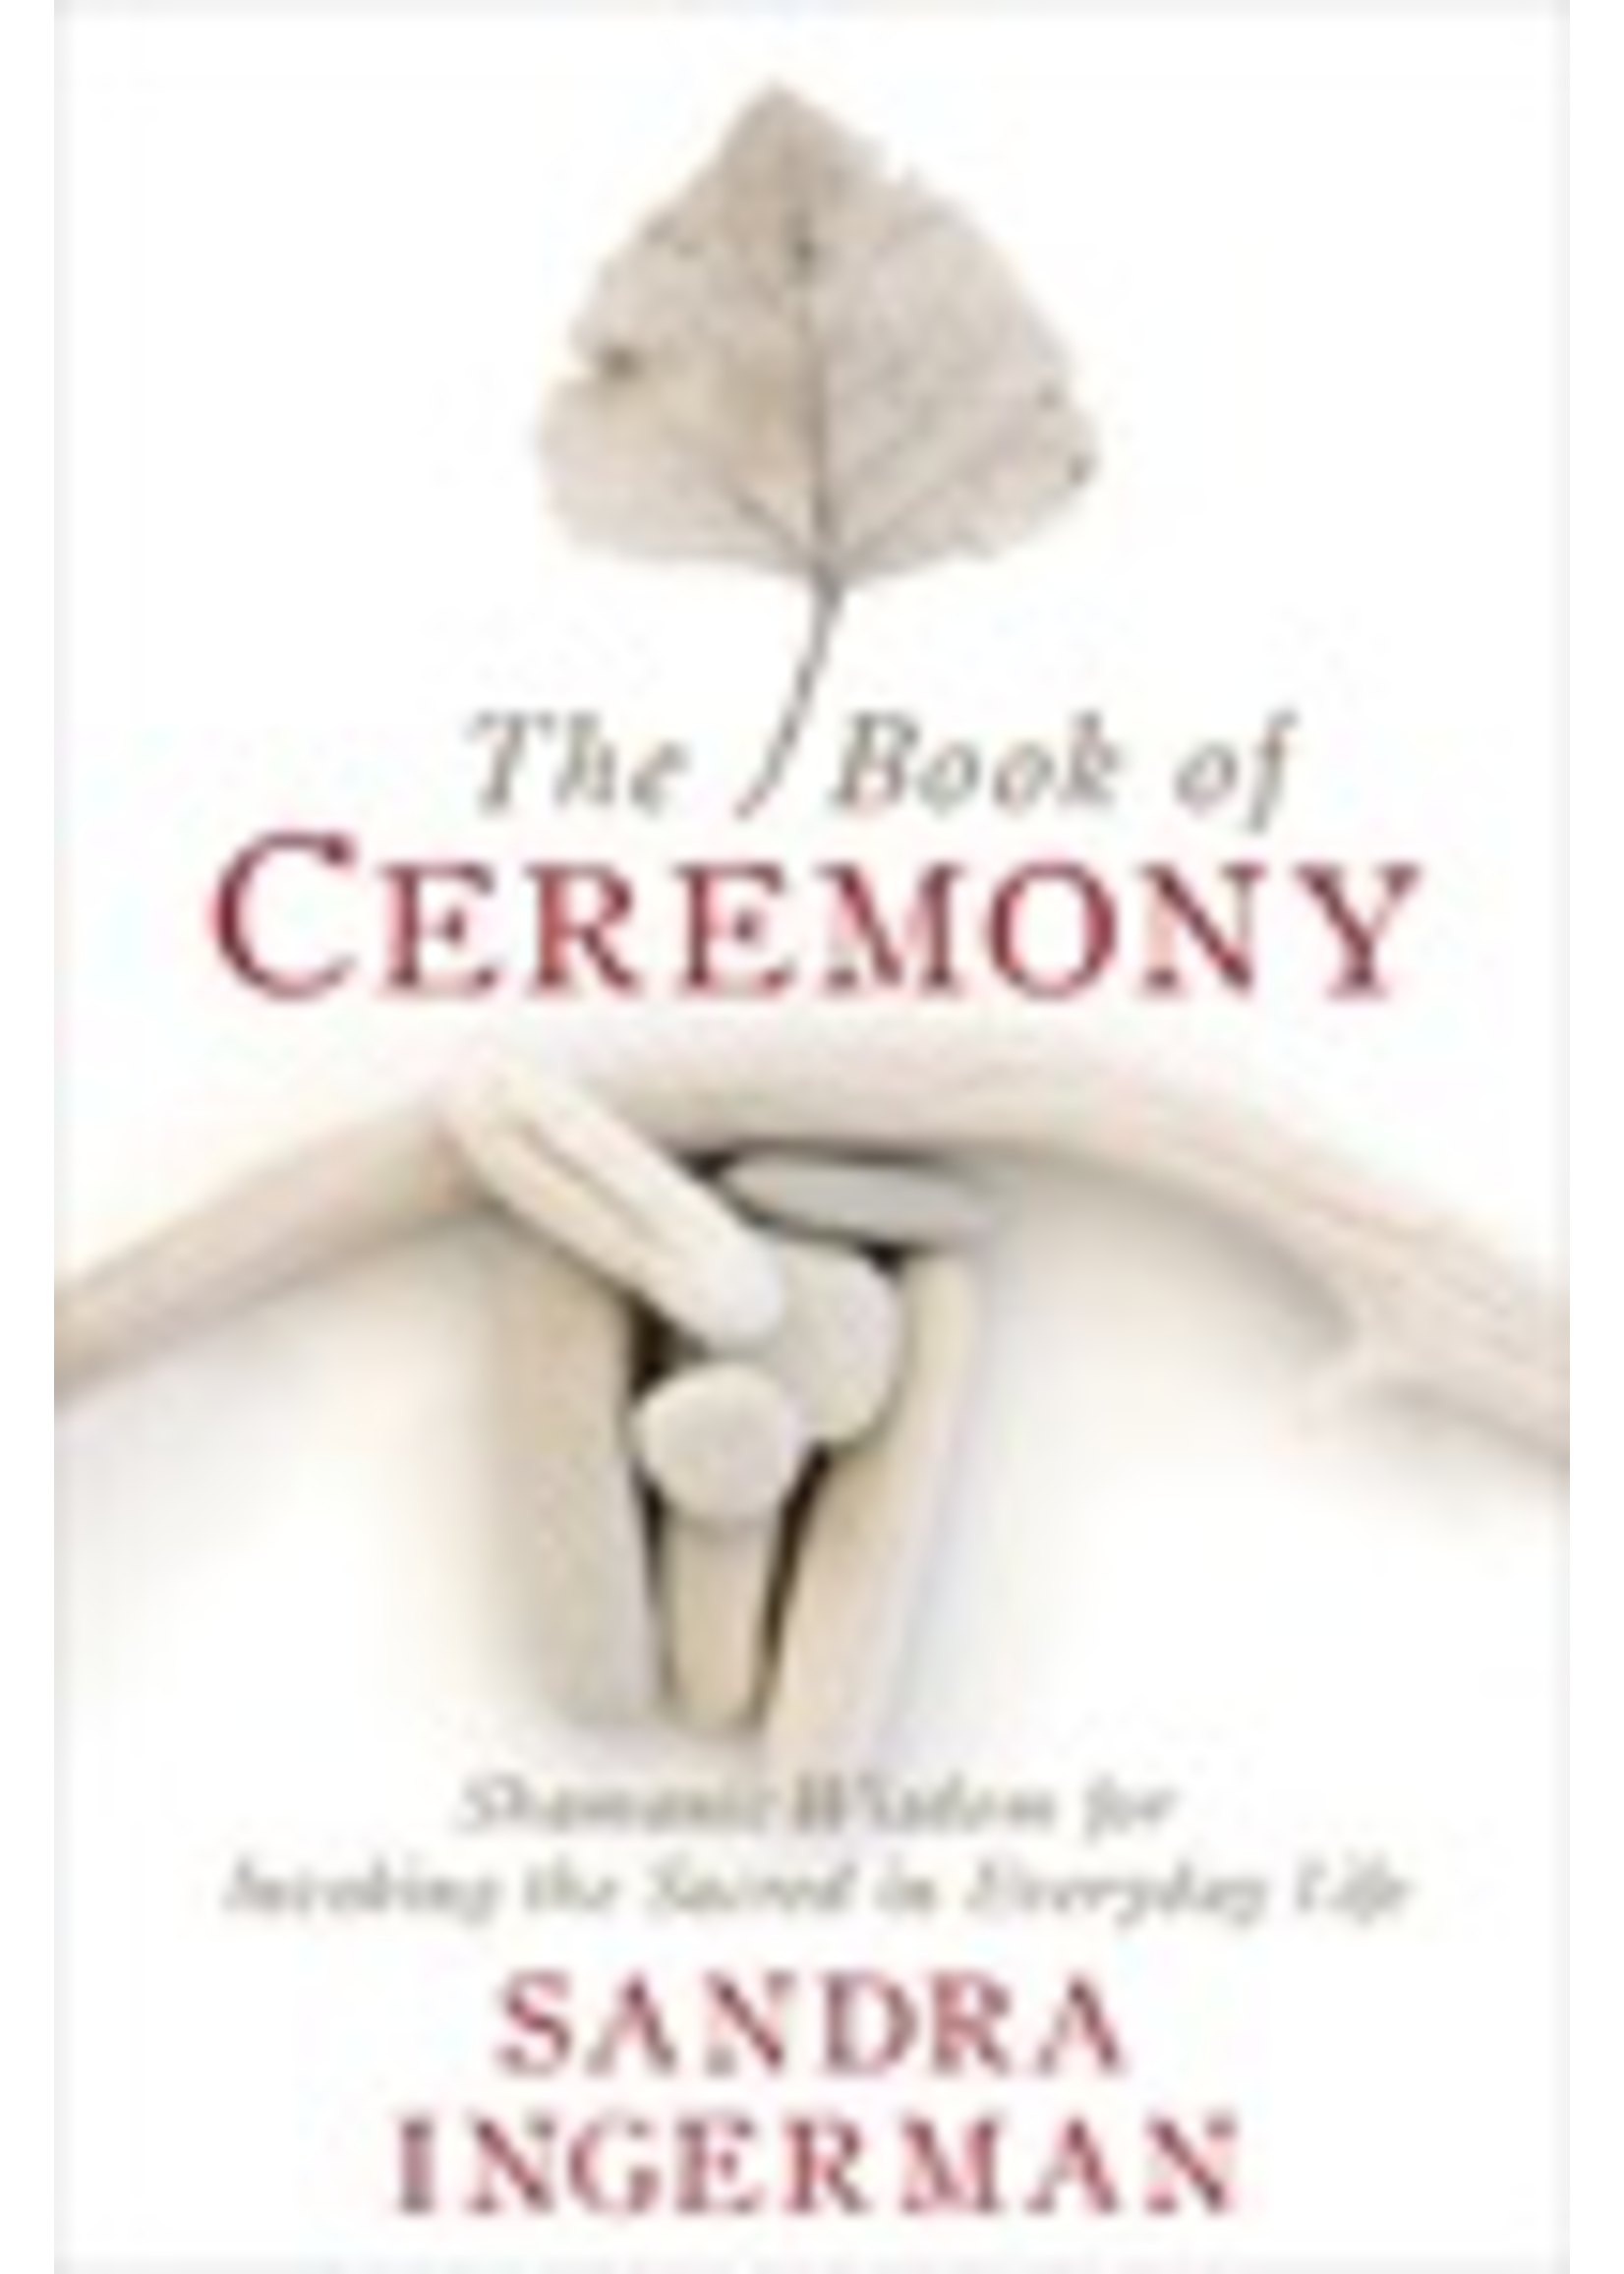 Book of Ceremony